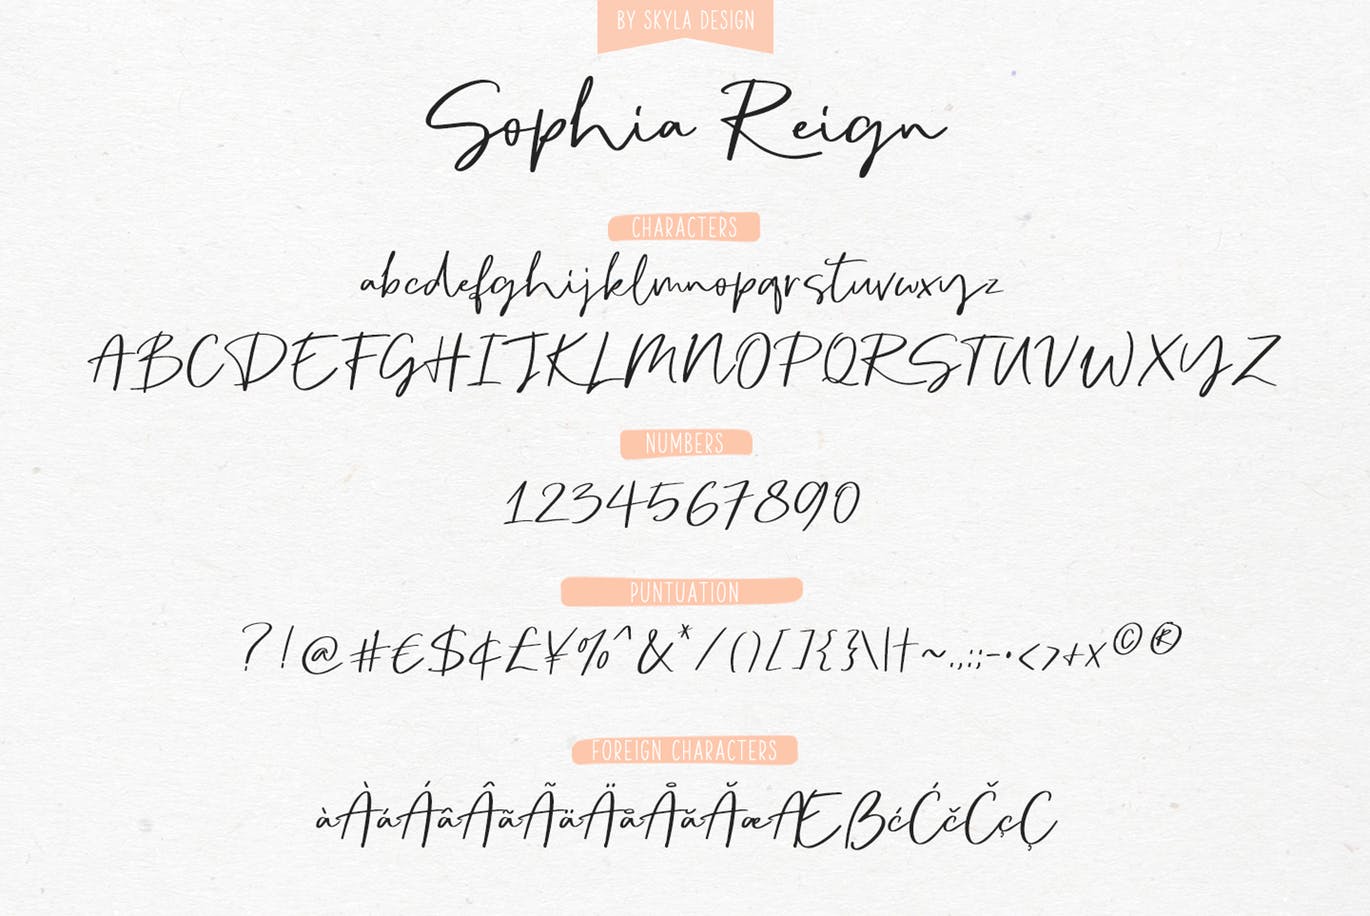 英文钢笔签名字体亿图网易图库精选&大写字母正楷字体亿图网易图库精选二重奏 Sophia Reign signature font duo插图(10)